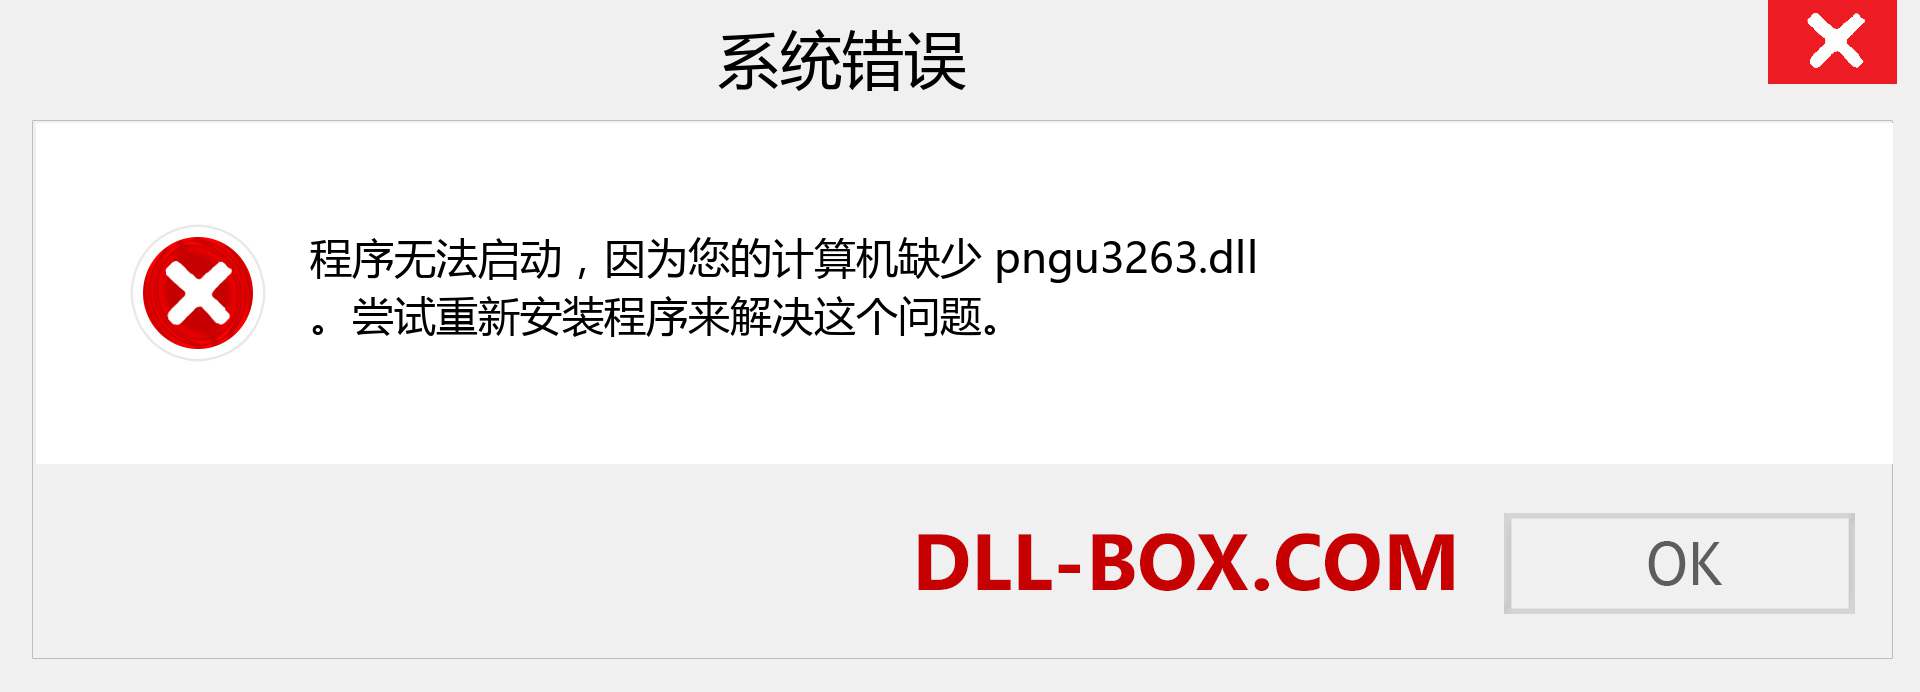 pngu3263.dll 文件丢失？。 适用于 Windows 7、8、10 的下载 - 修复 Windows、照片、图像上的 pngu3263 dll 丢失错误